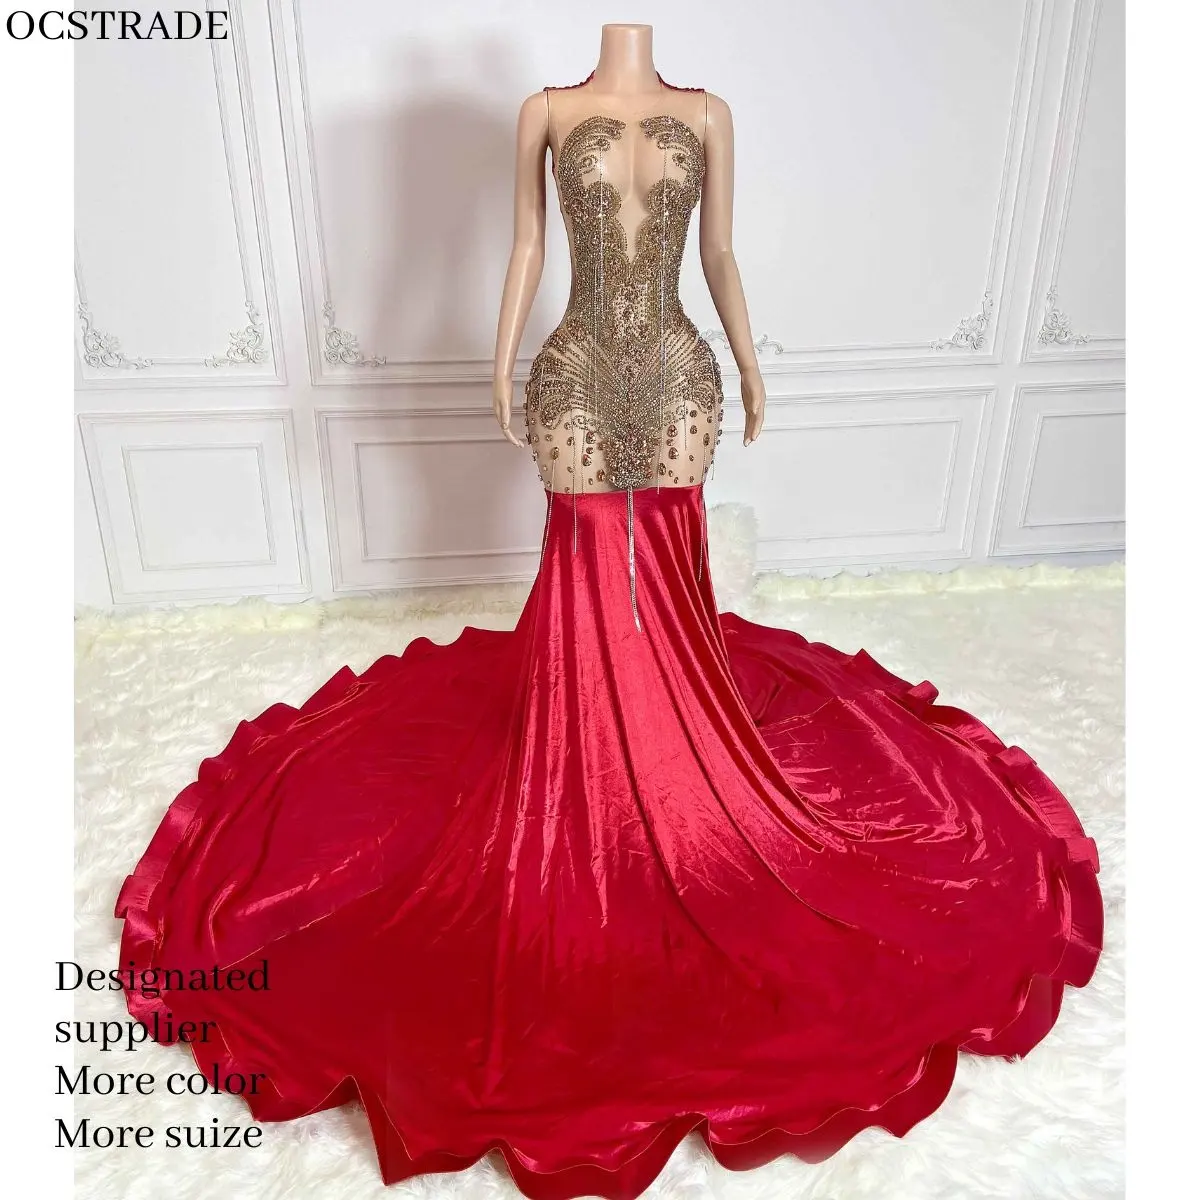 אוקטראד ייחודית חרוזים יהלומים בתולת ים אורך רצפת שמלת נשף ארוכה שמלת כלה נוצצת ריינסטון שמלת ערב מקסי יוקרתית